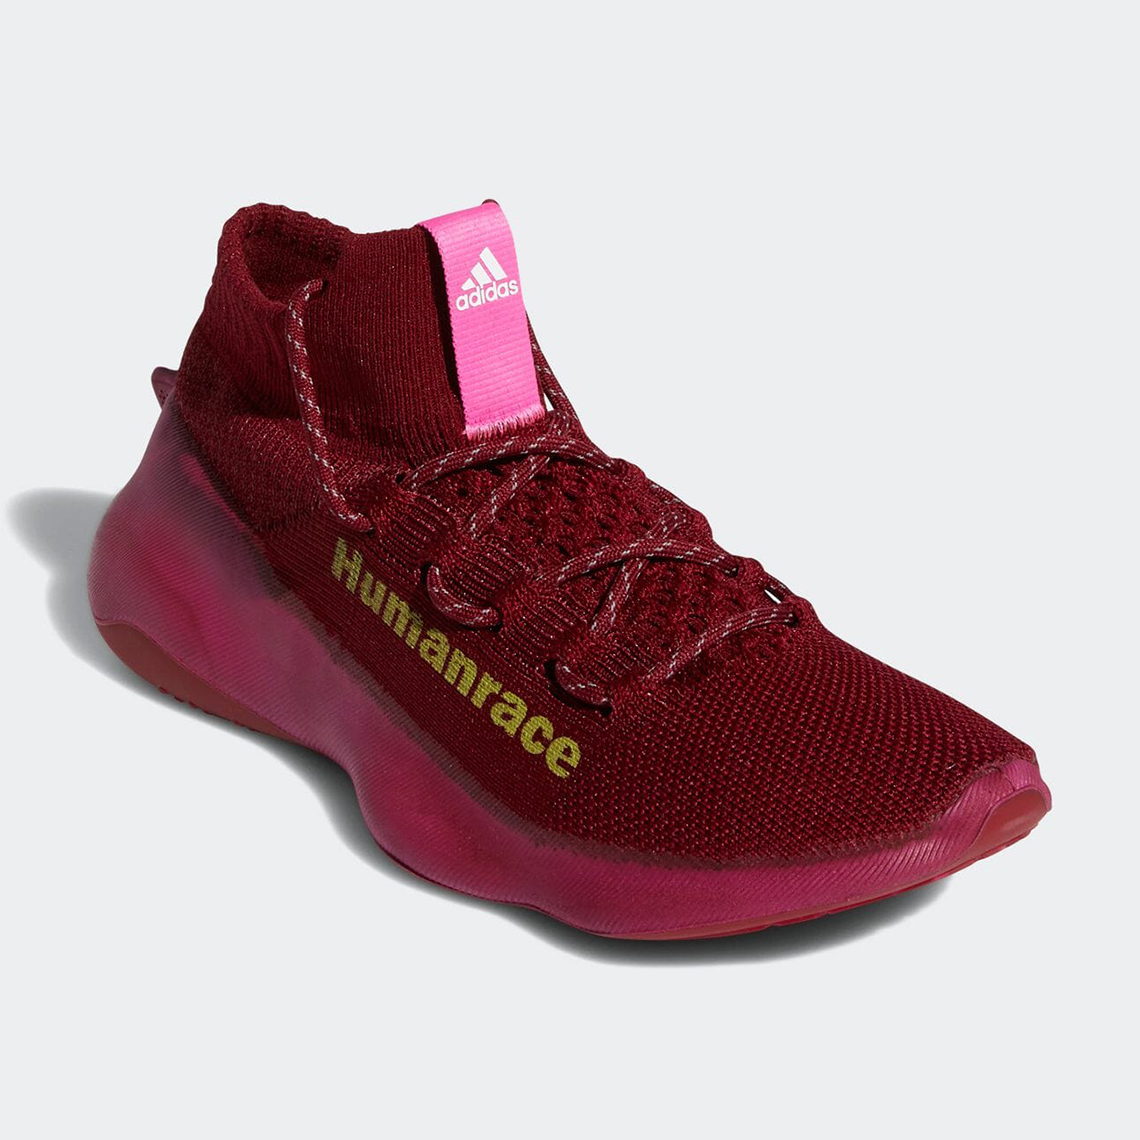 adidas humanrace sichona red maroon GW4879 6